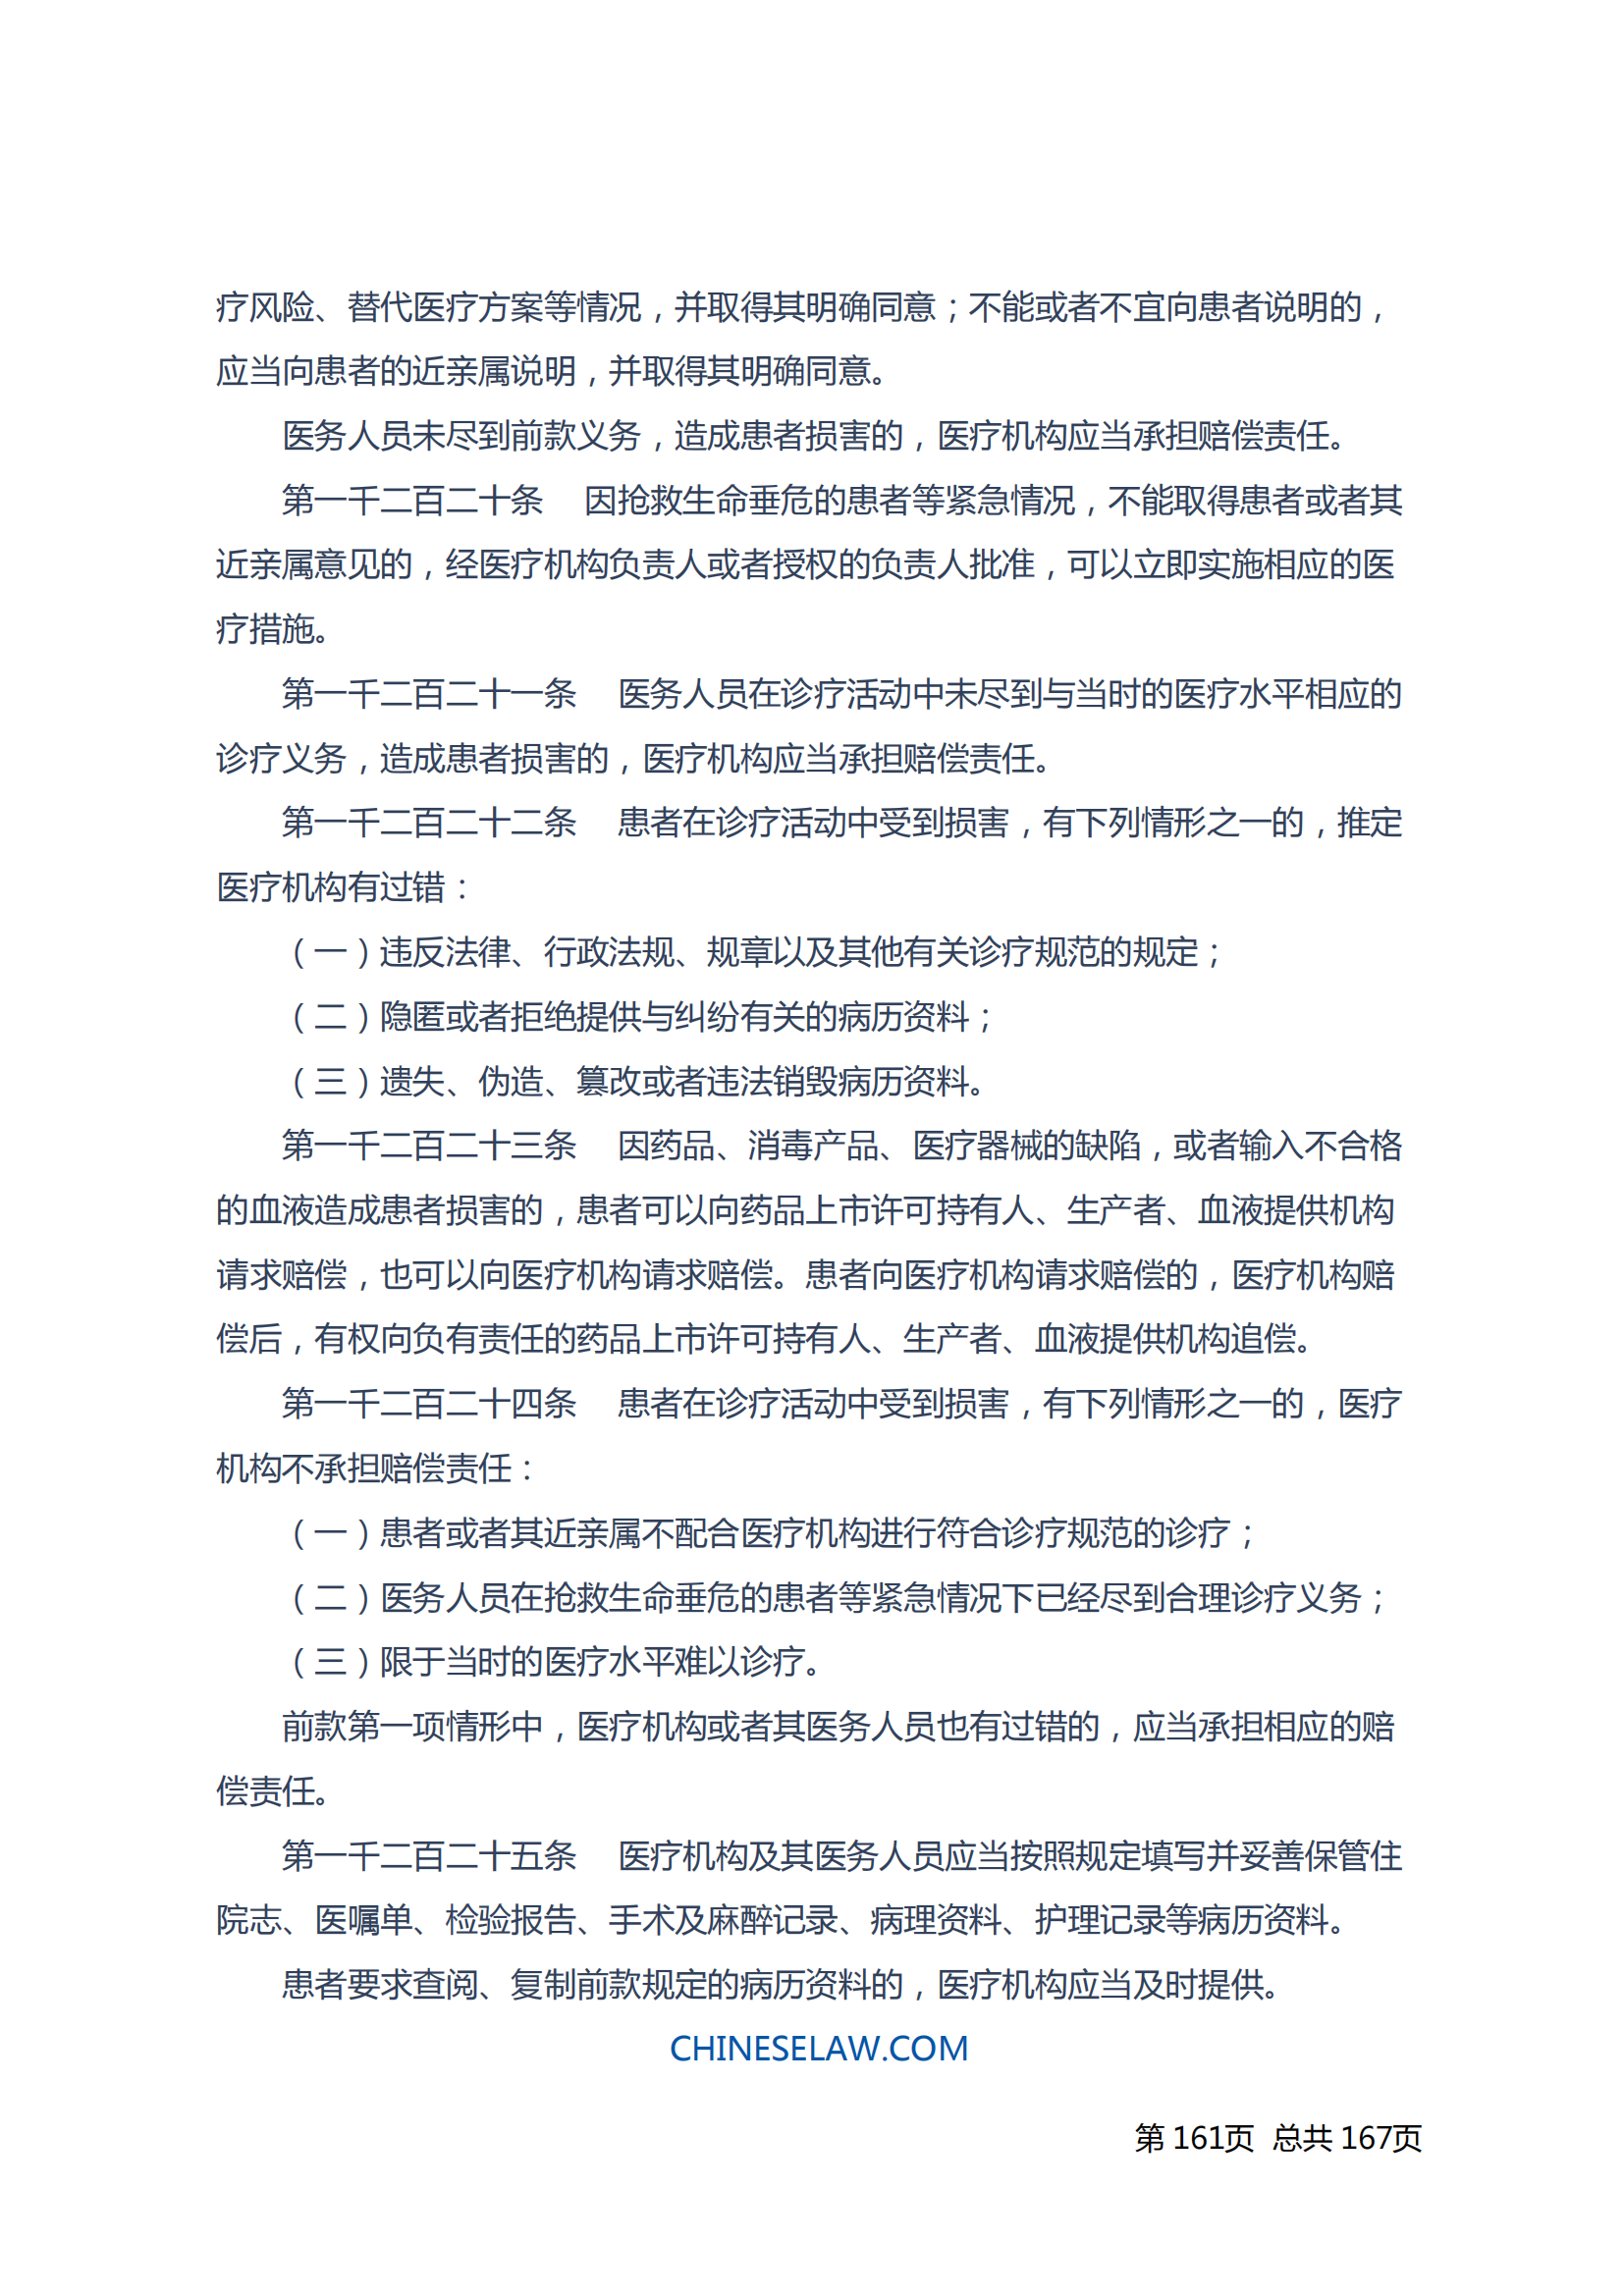 中华人民共和国民法典_160